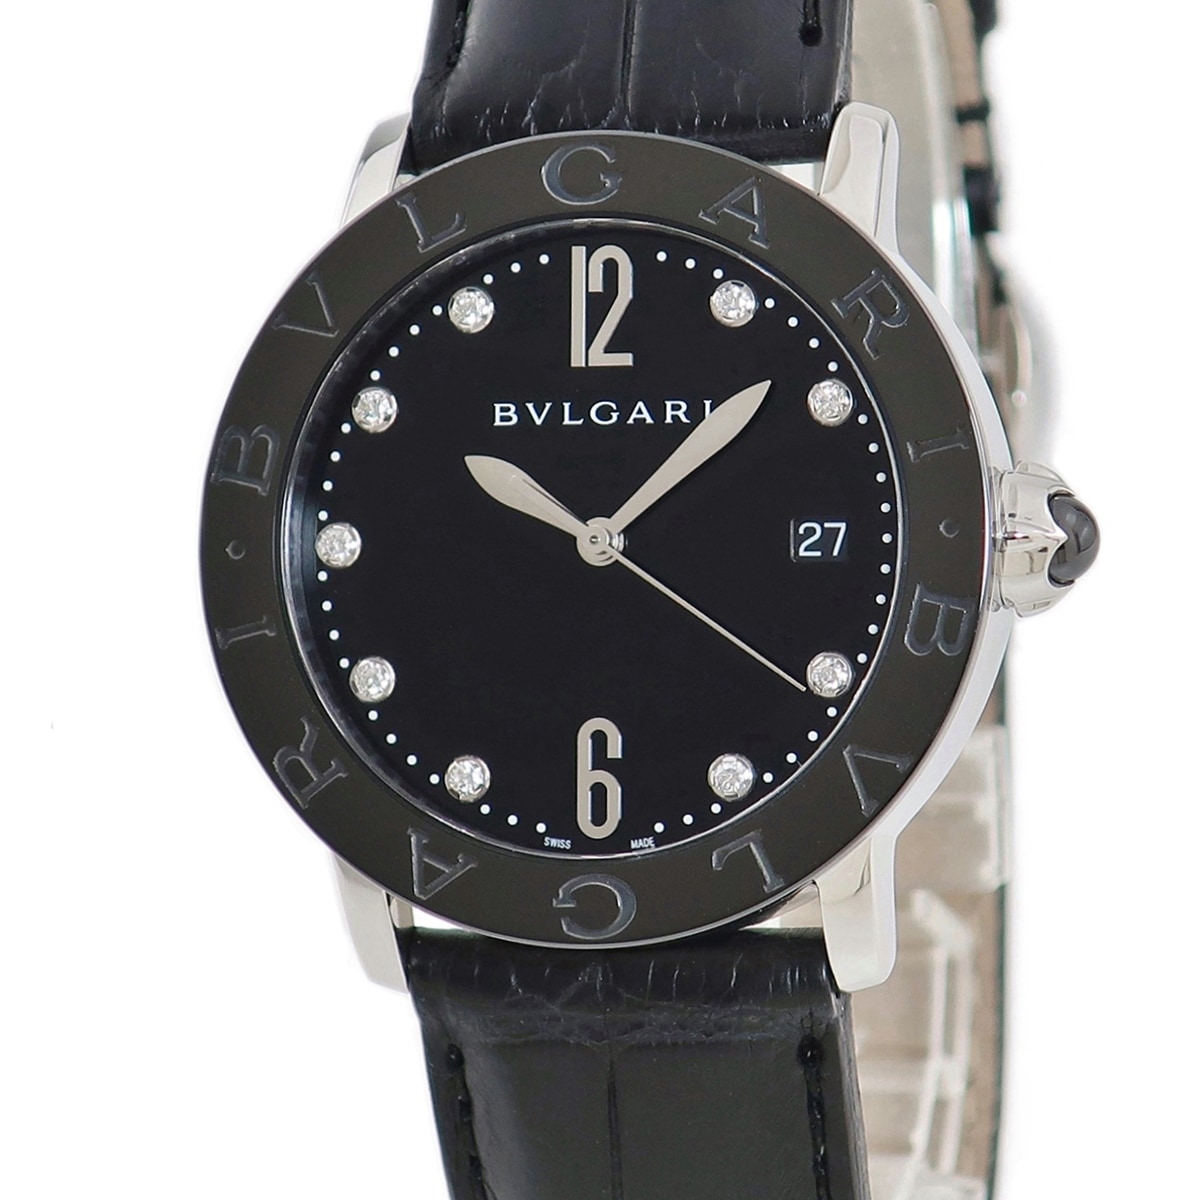 【BRERA OROLOGI】ブレラオロロジ サウスポーモデル BRML2C48 ステンレススチール×ラバー 黒 クオーツ メンズ 黒文字盤 腕時計